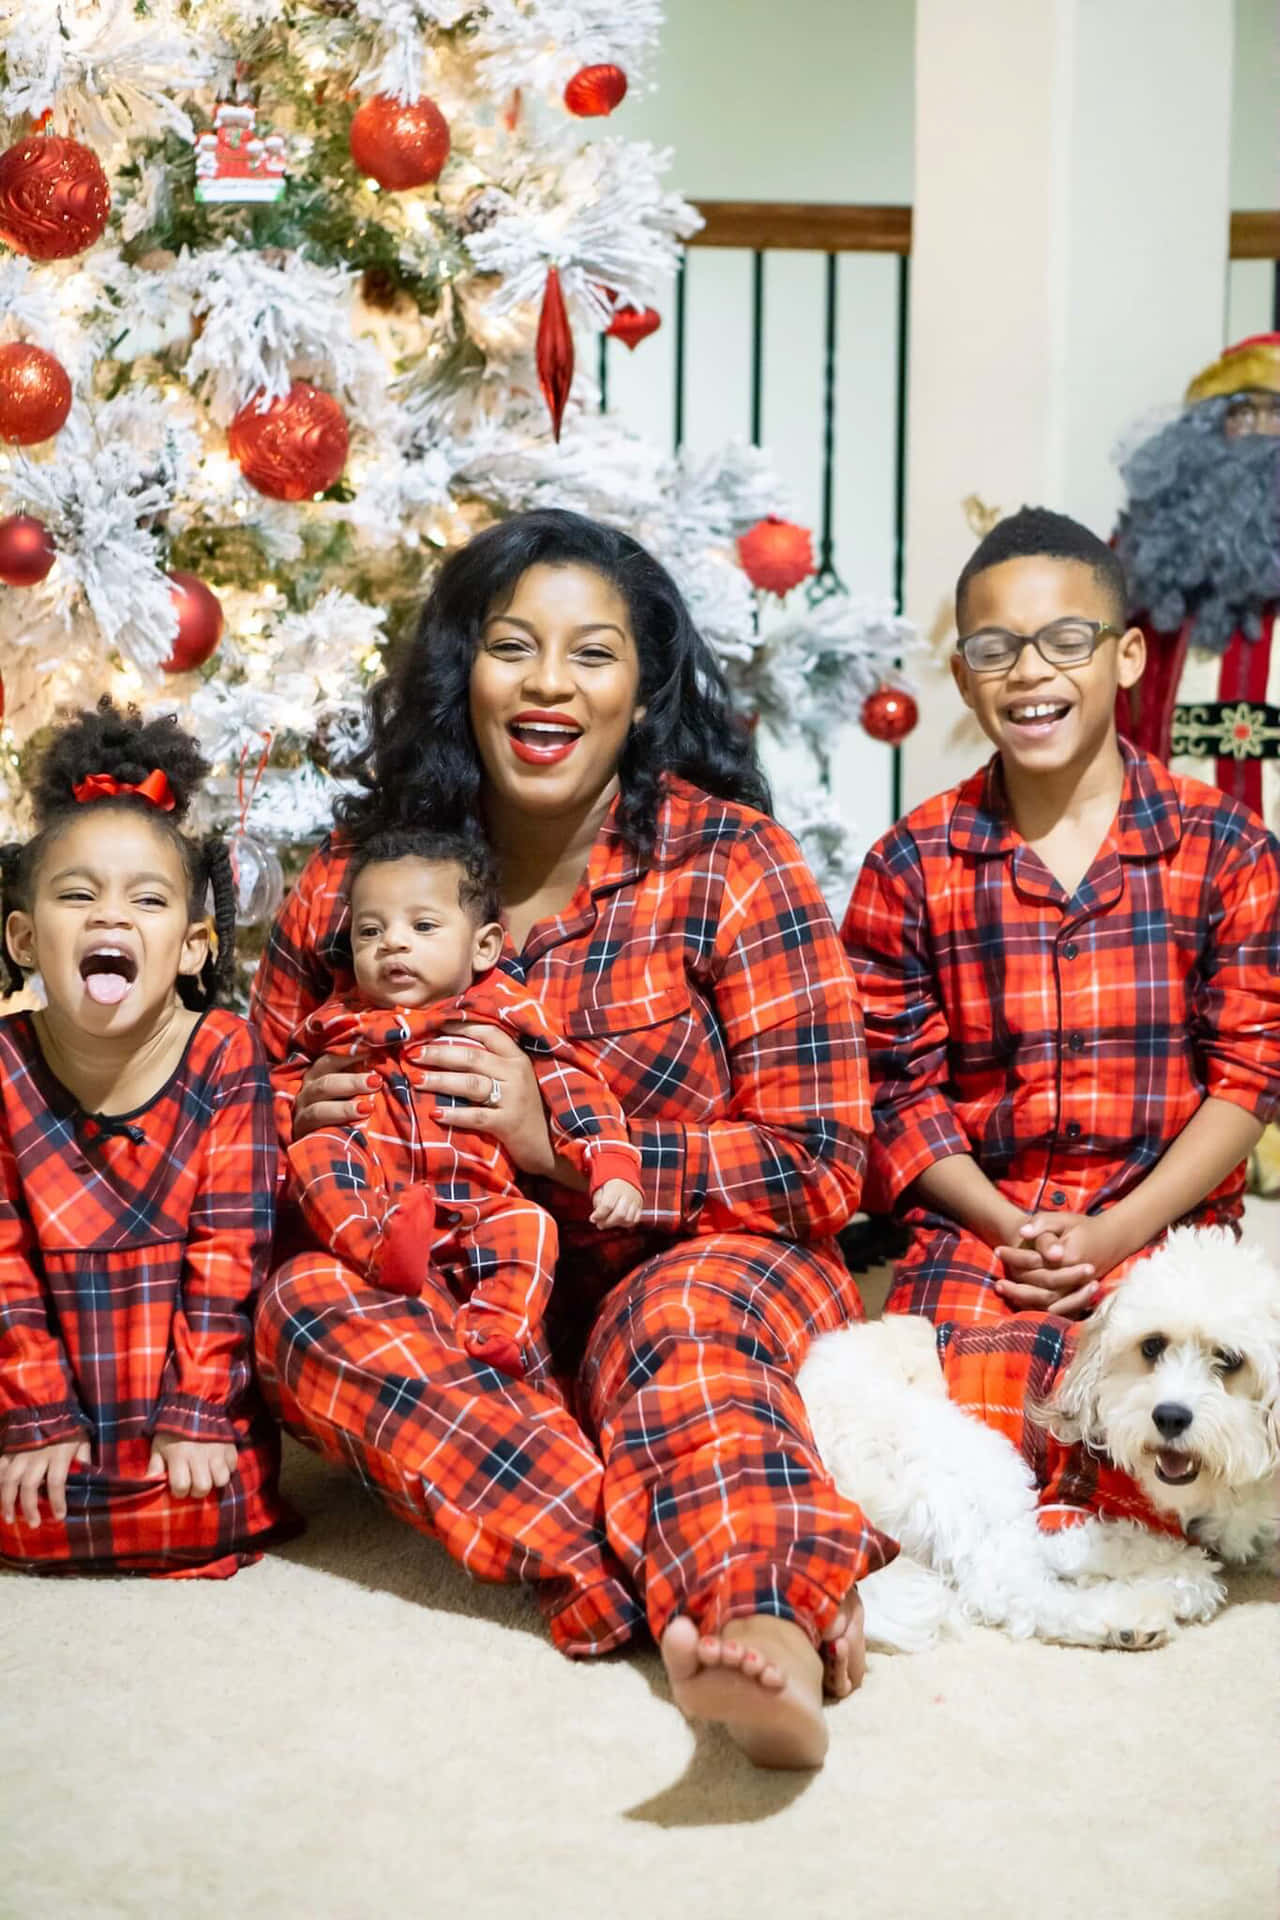 Imagende Una Familia Negra En Pijamas Rojos En Navidad